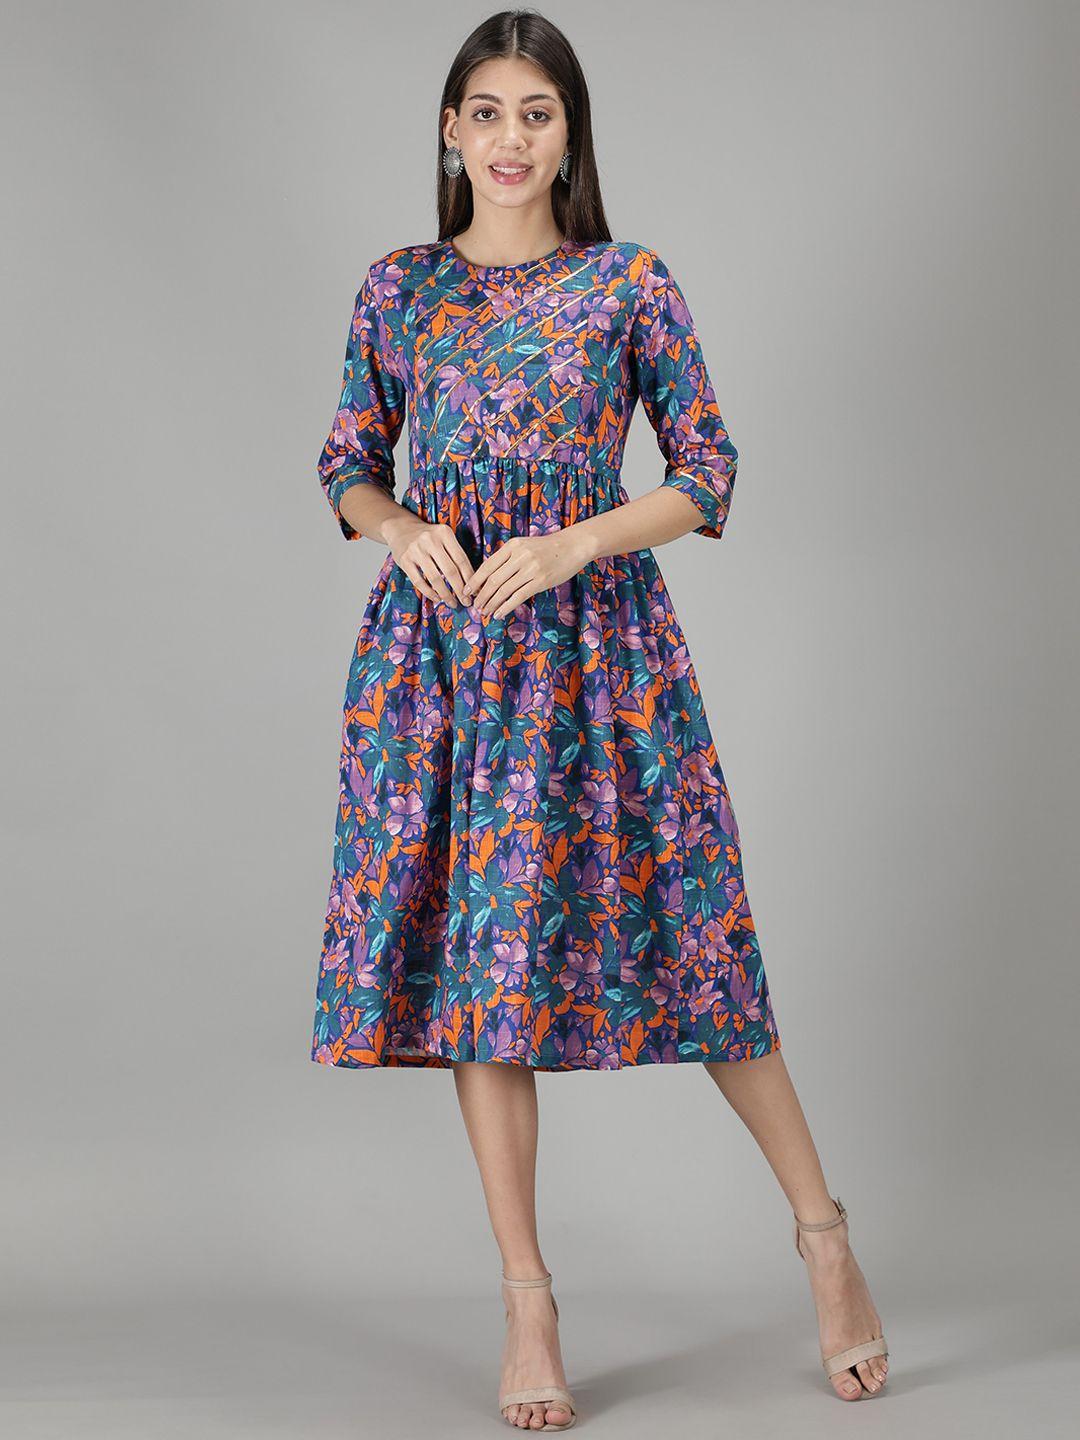 cot'n-soft-teal-&-violet-floral-printed-cotton-a-line-dress